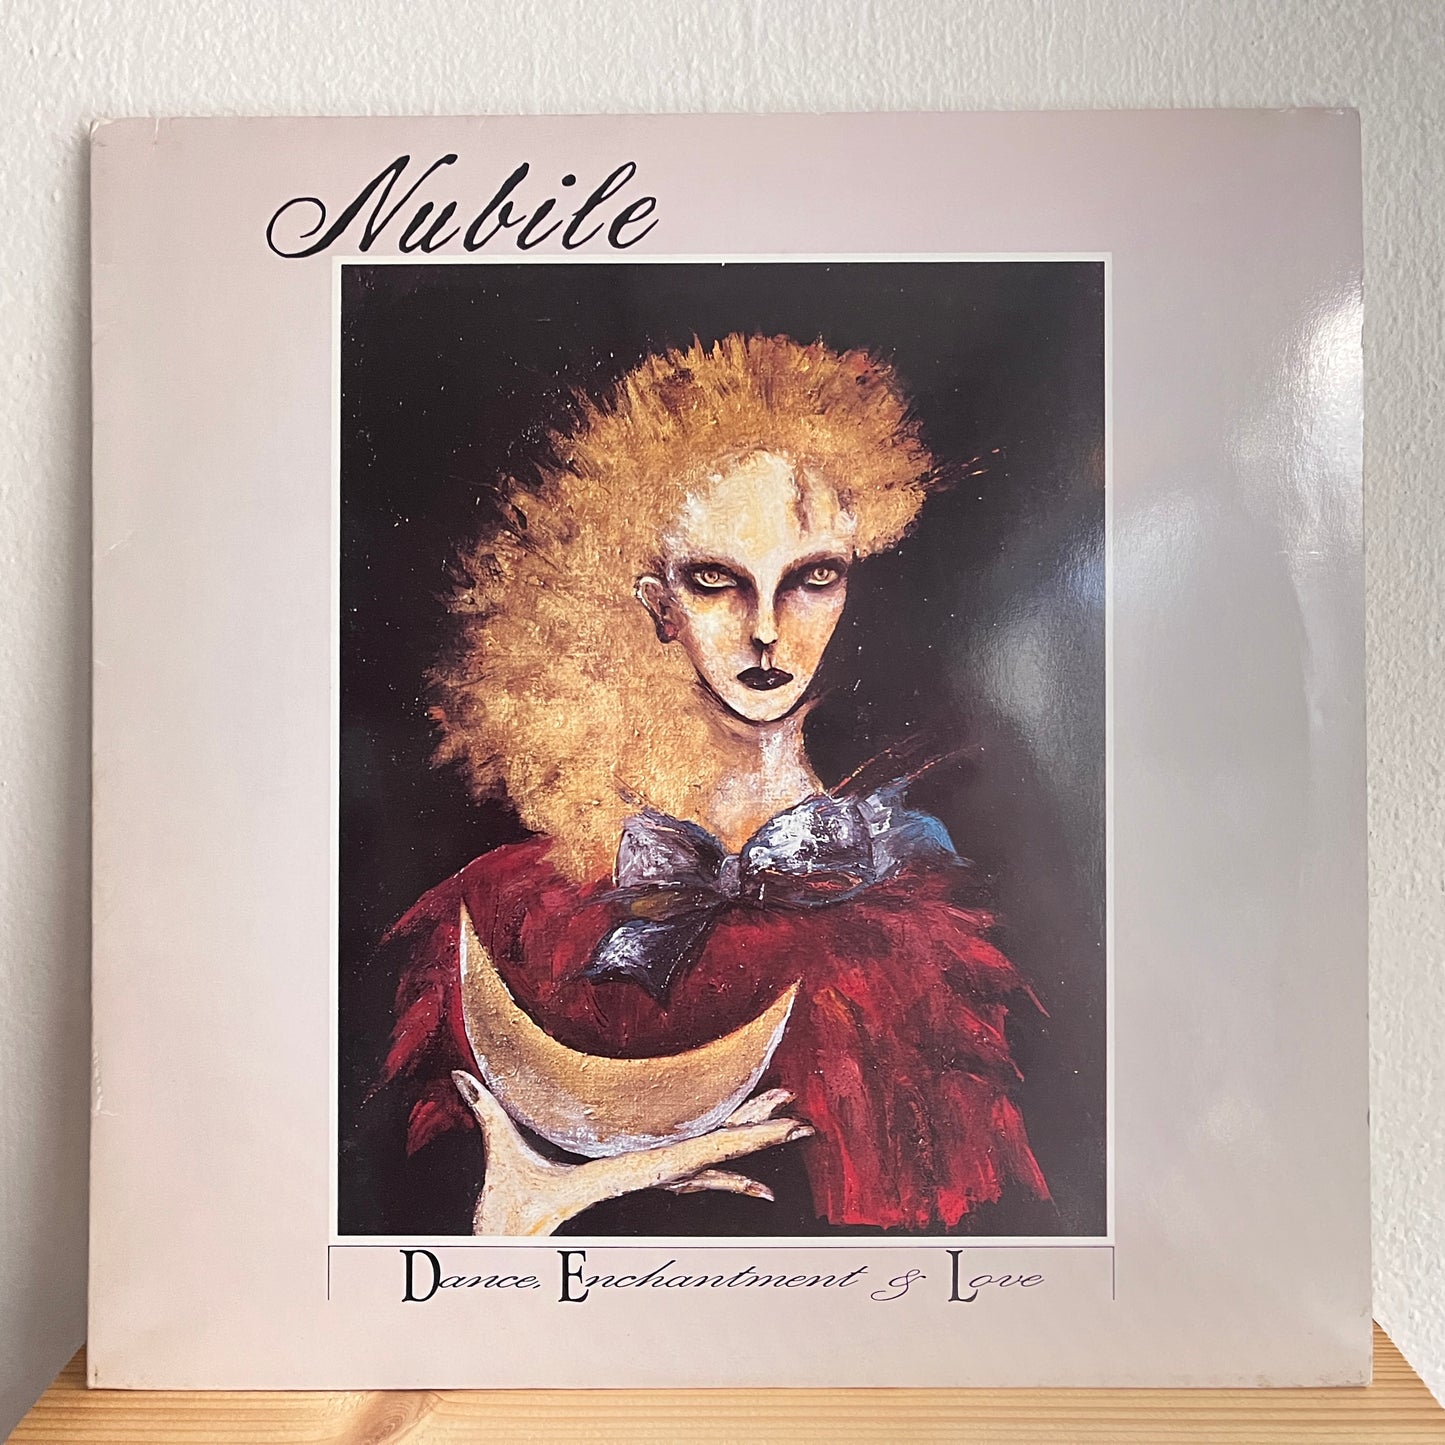 Nubile – Dance, Enchantment & Love